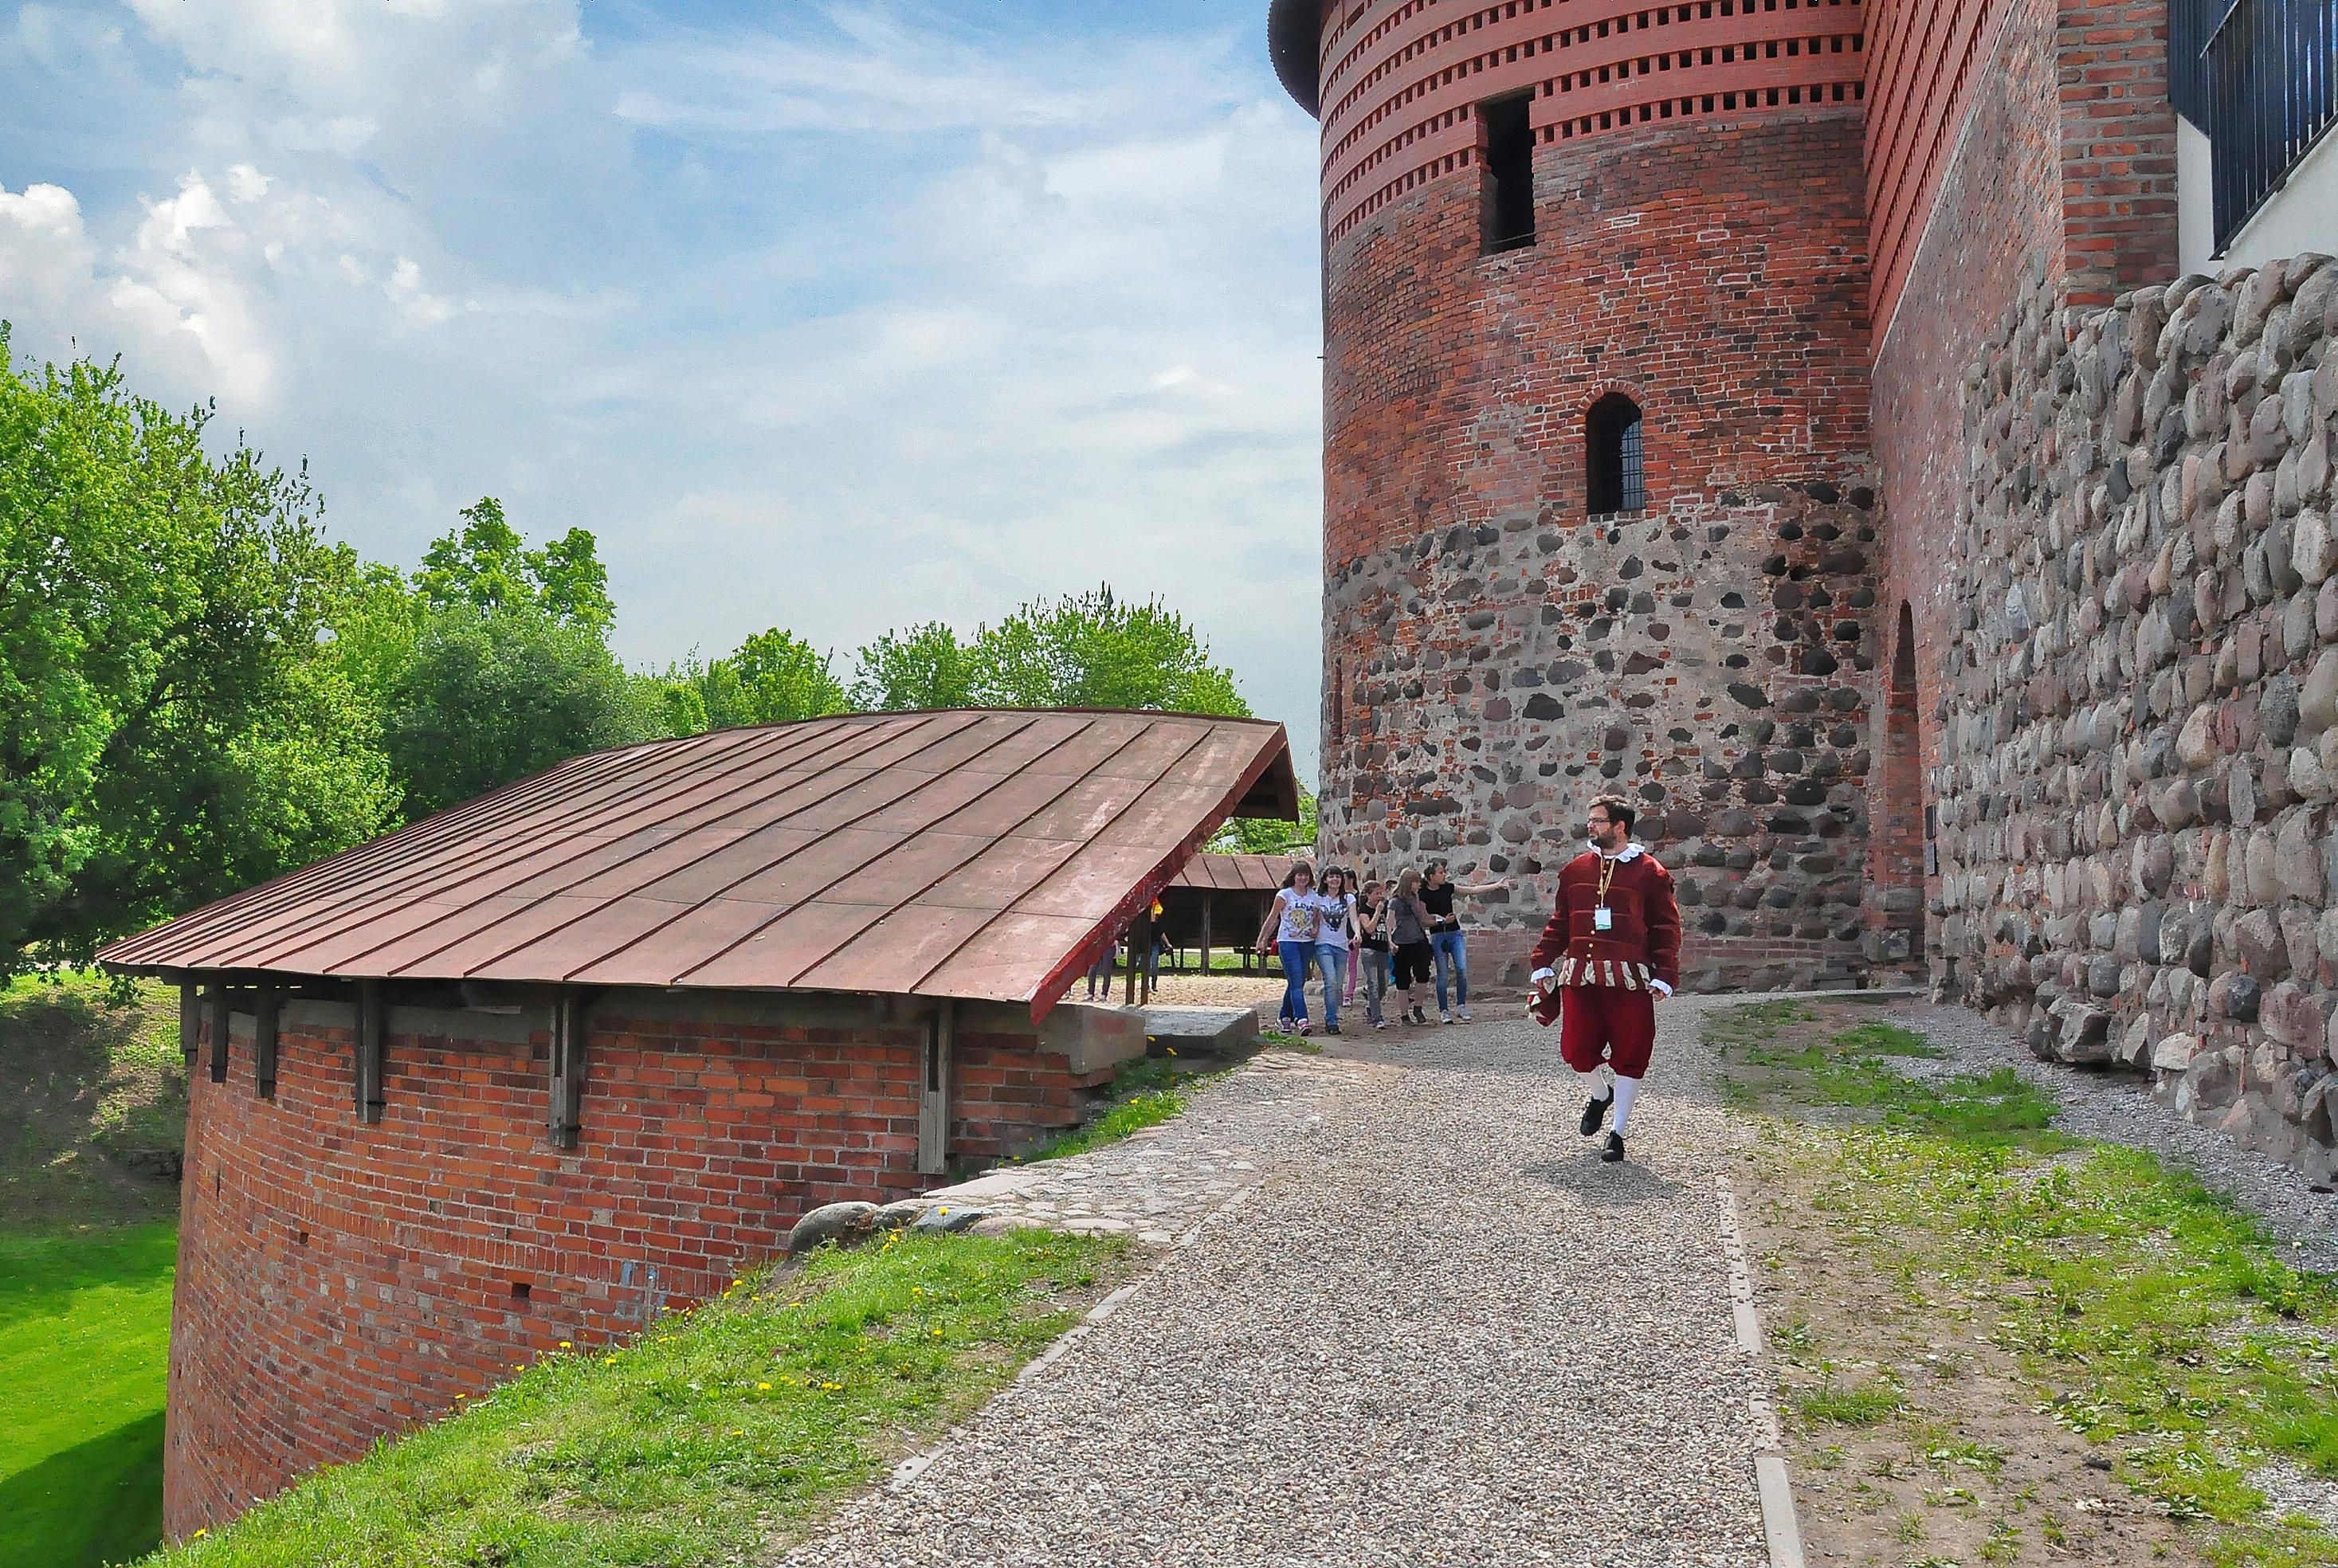 Каунасский замок